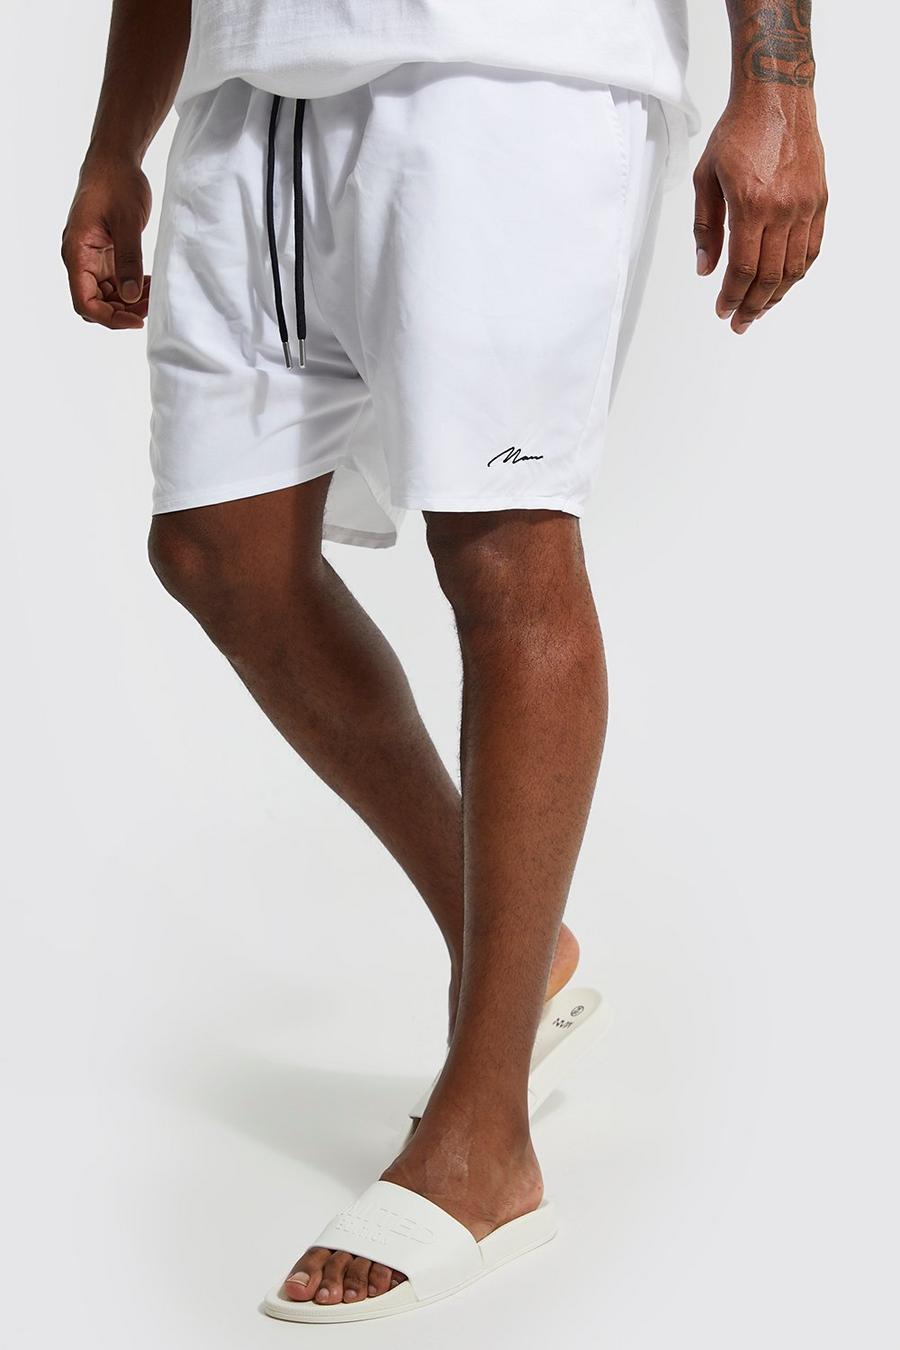 Costume a pantaloncino Plus Size in fibre riciclate con firma Man, White bianco